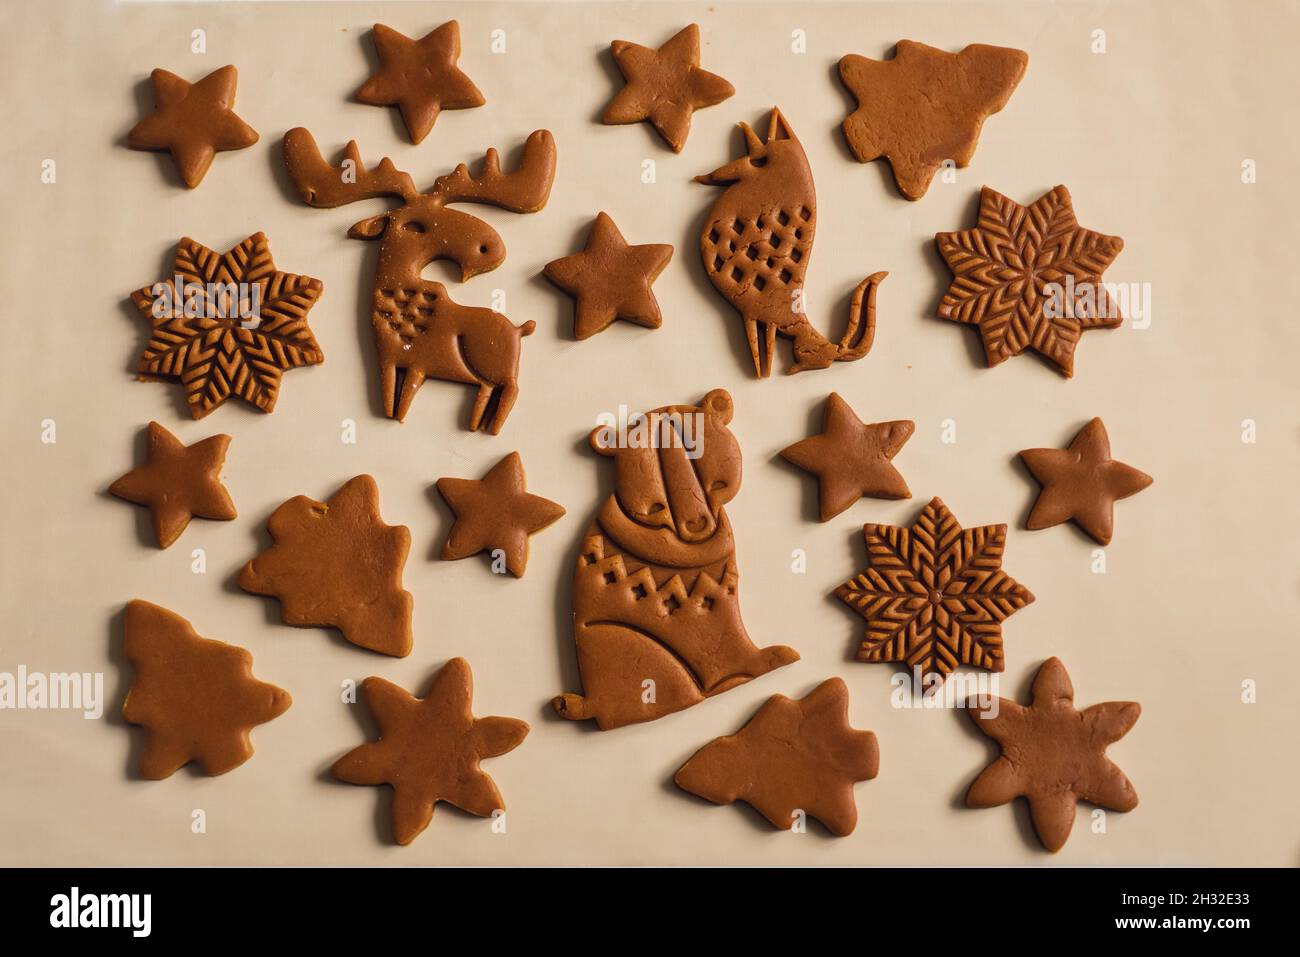 Motif de biscuits de pain d'épice de Noël sous forme d'animaux, d'arbres, de flocons de neige Banque D'Images